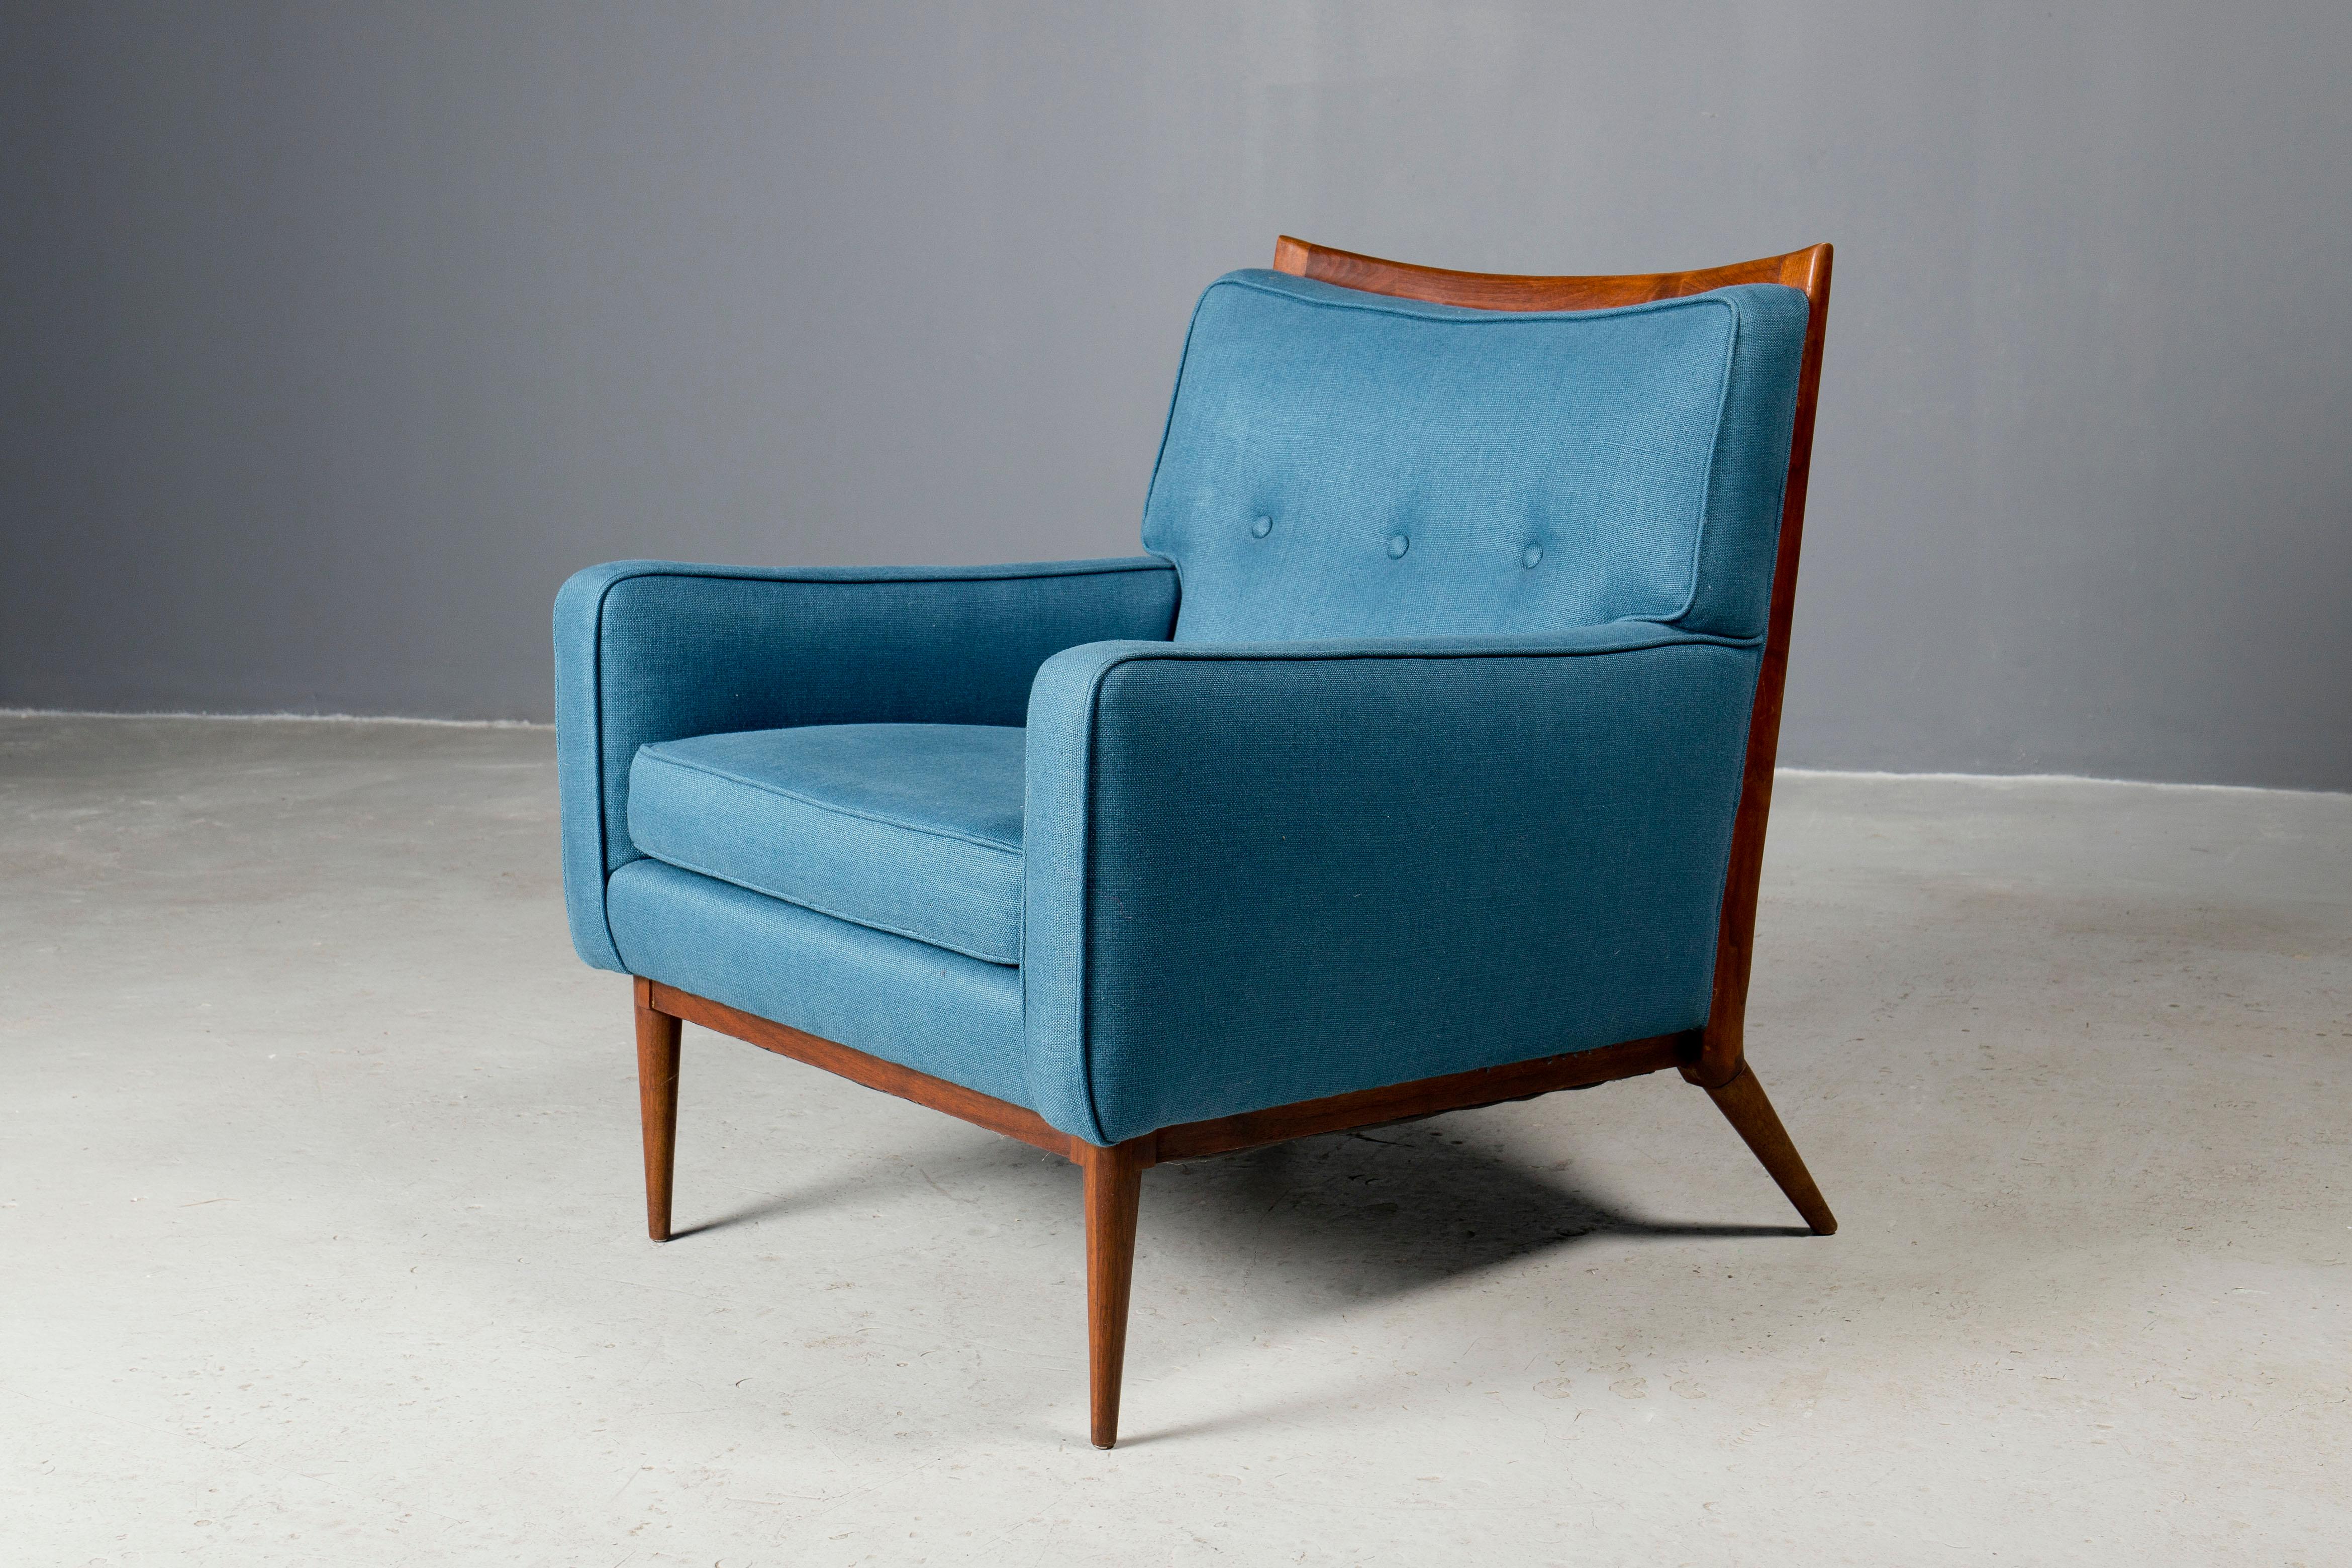 Chaise longue emblématique, conçue par Paul McCobb et produite par Calvin, NY, années 1950.
Le cadre est original dans une finition naturelle et complété par un magnifique rembourrage bleu. 
De loin le design le plus élégant de McCobb !
Disponible